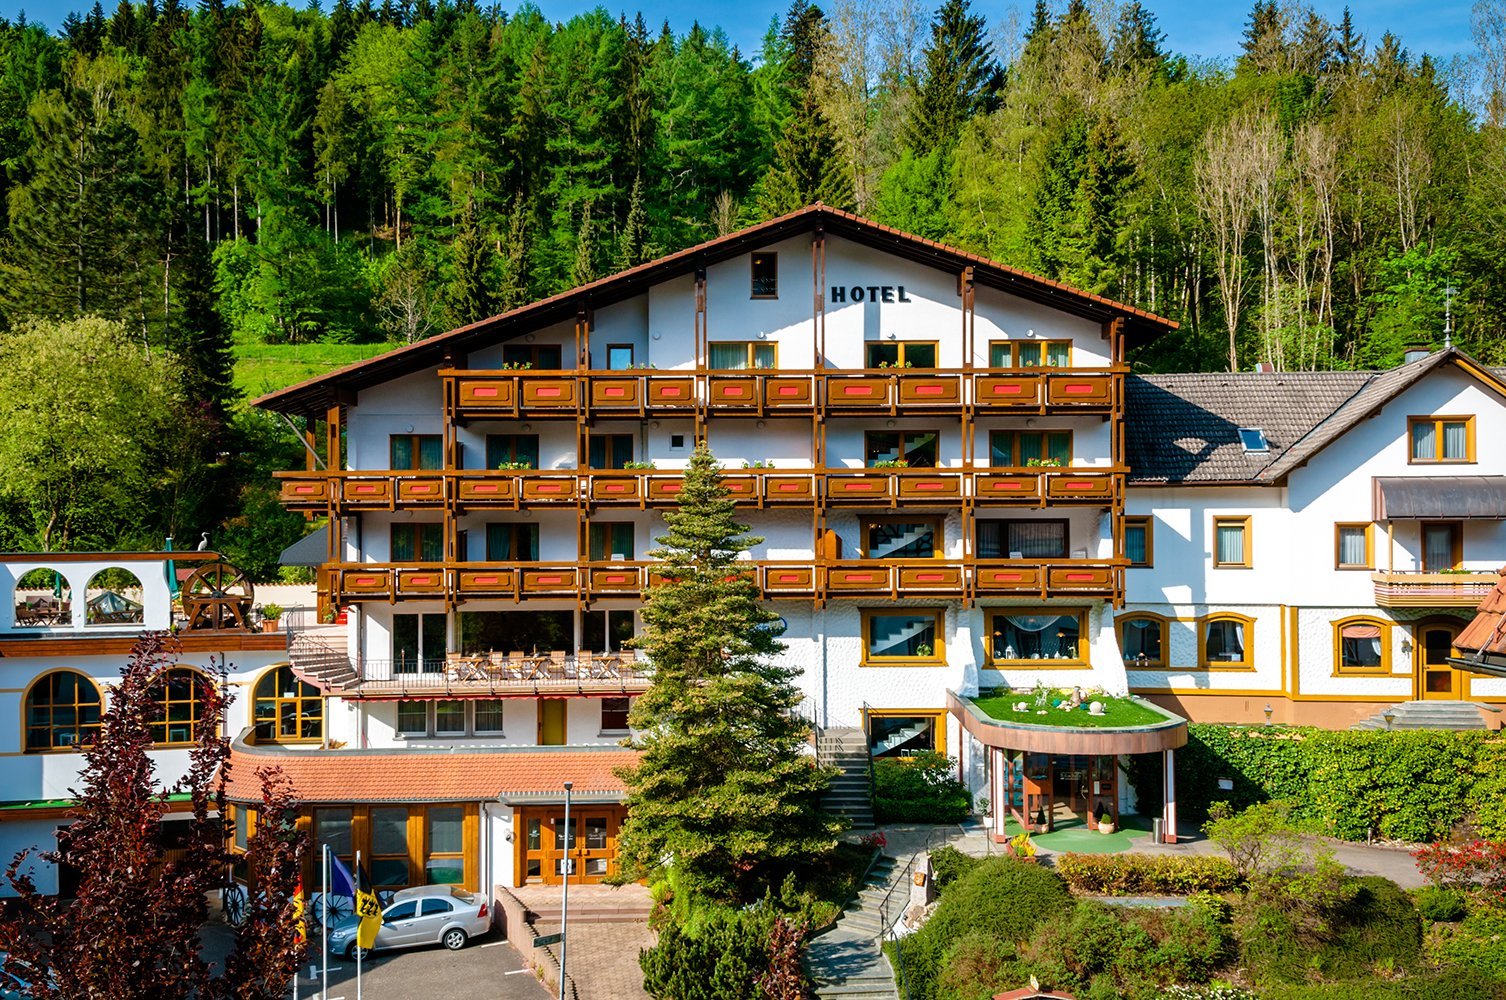 3 Tage Zeit für zwei – Holzschuhs Schwarzwaldhotel (4 Sterne) in Baiersbronn, Baden-Württemberg inkl. Halbpension